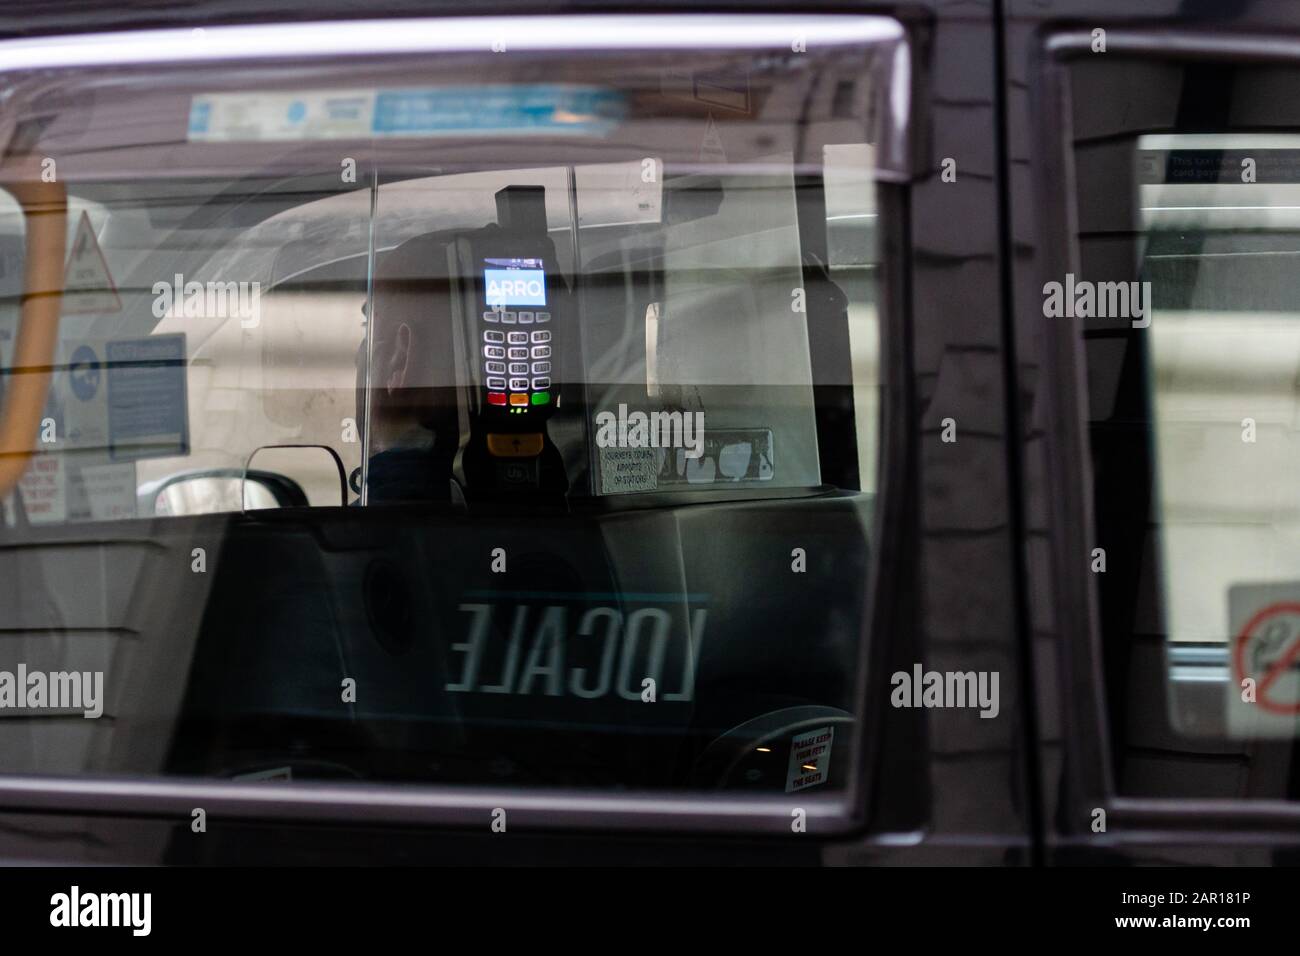 Londres, Royaume-Uni - 1 janvier 2020: Une vue abstraite à travers une fenêtre de taxi à un terminal de banque pour le paiement d'un trajet en taxi à Londres Banque D'Images